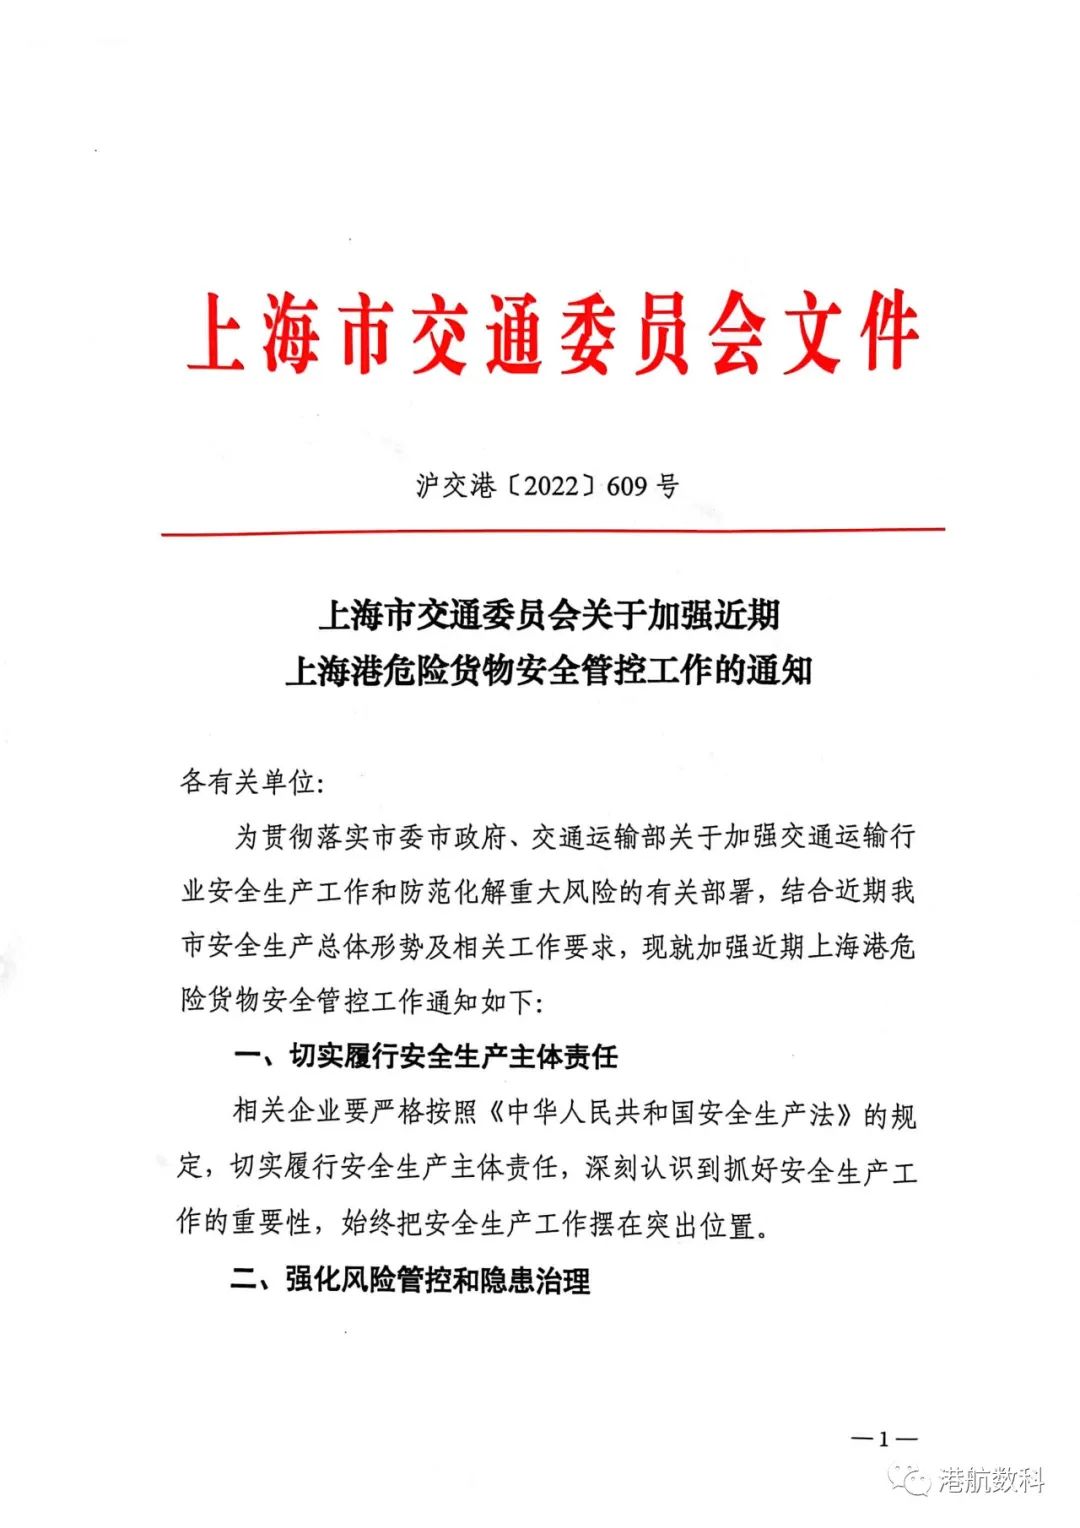 上海港将暂停爆炸品、放射性物质港口作业通知